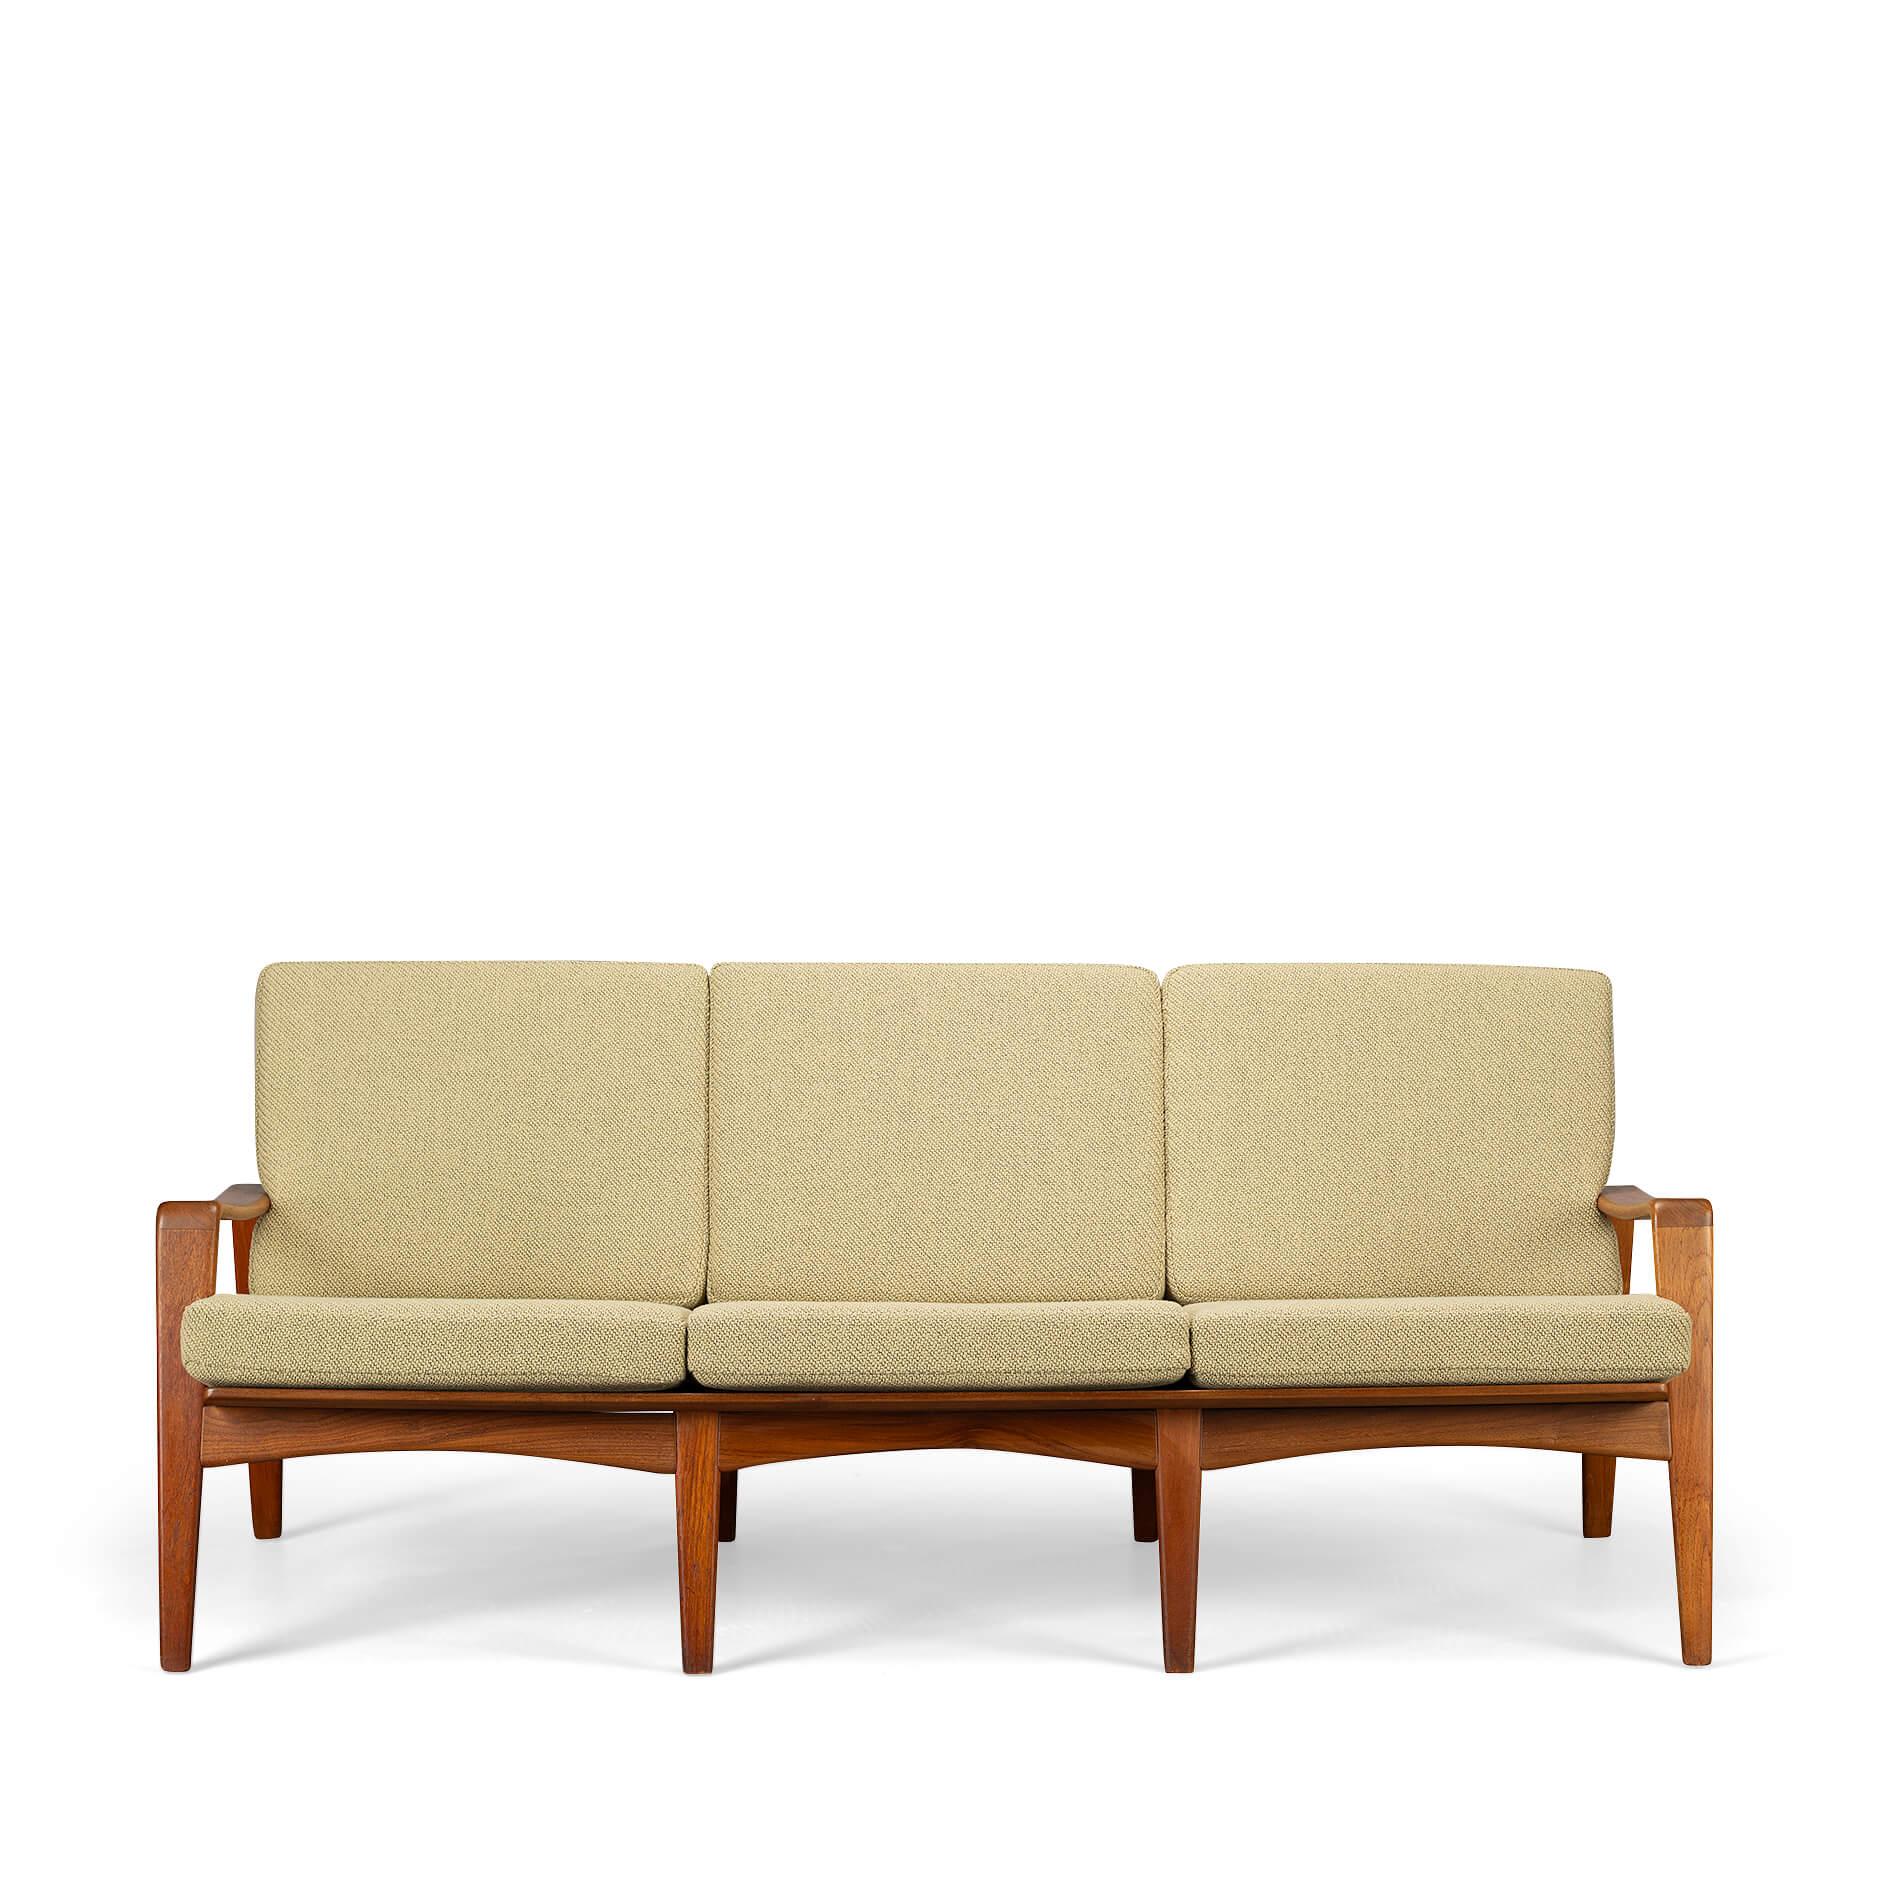 Sofa im Vintage-Design
Sofa Modell Nr. 35, entworfen von Arne Wahl Iversen, hergestellt von Komfort, Dänemark, 1960. Dieses bequeme Sofa mit beeindruckenden Holzarbeiten an der Rückenlehne ist aus massivem Teakholz gefertigt und mit neuen Polstern